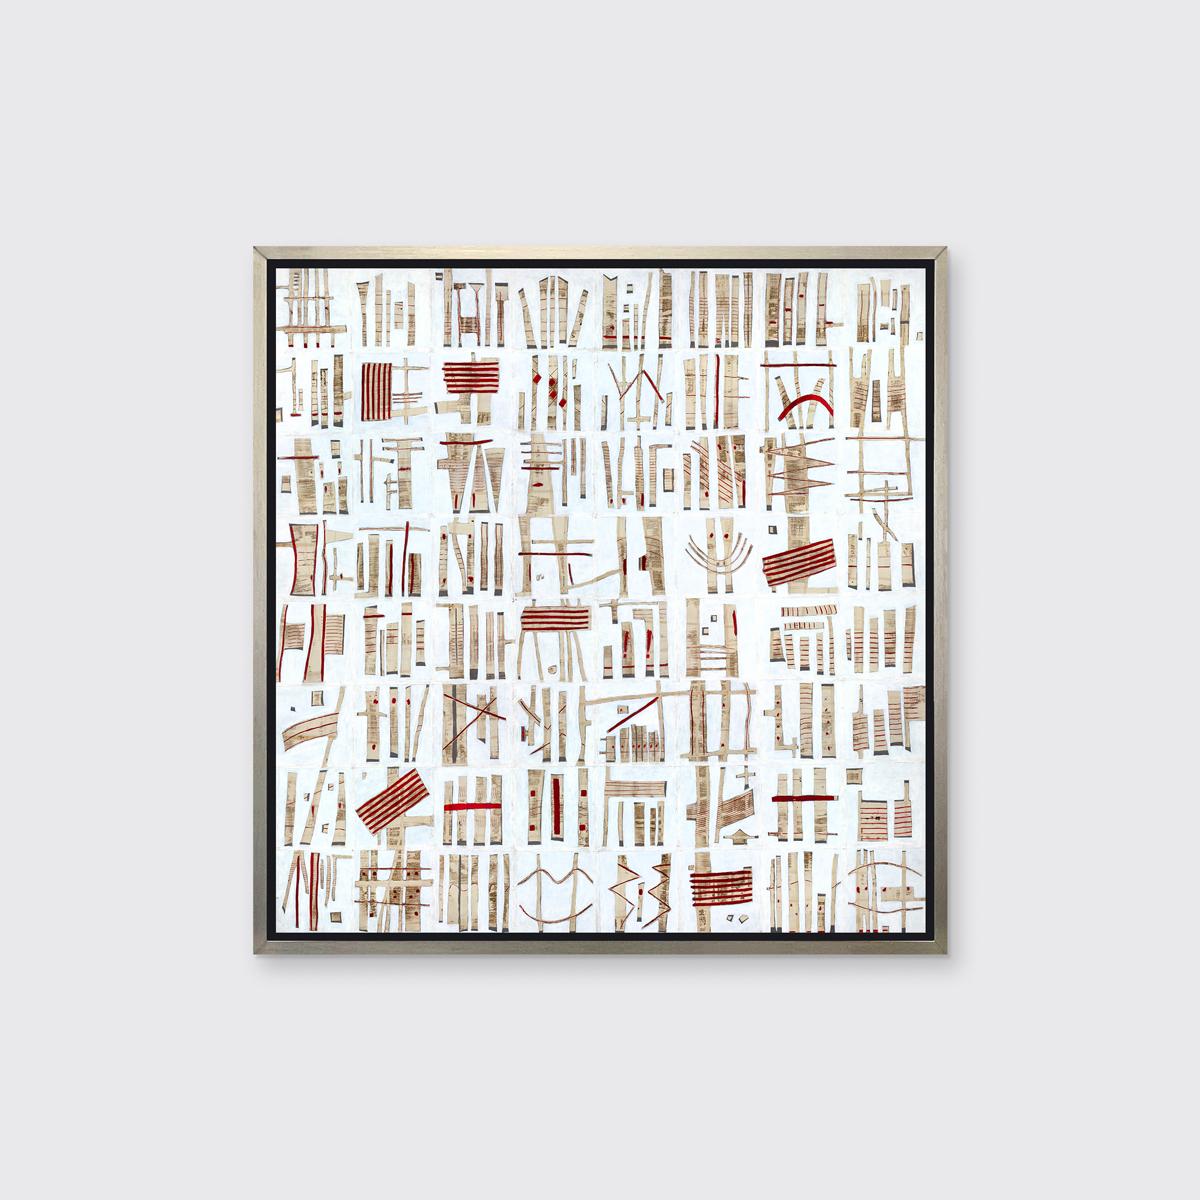 Abstract Print Sofie Swann - « Datetime Story, « encadré, tirage giclée en édition limitée, 24" x 24"